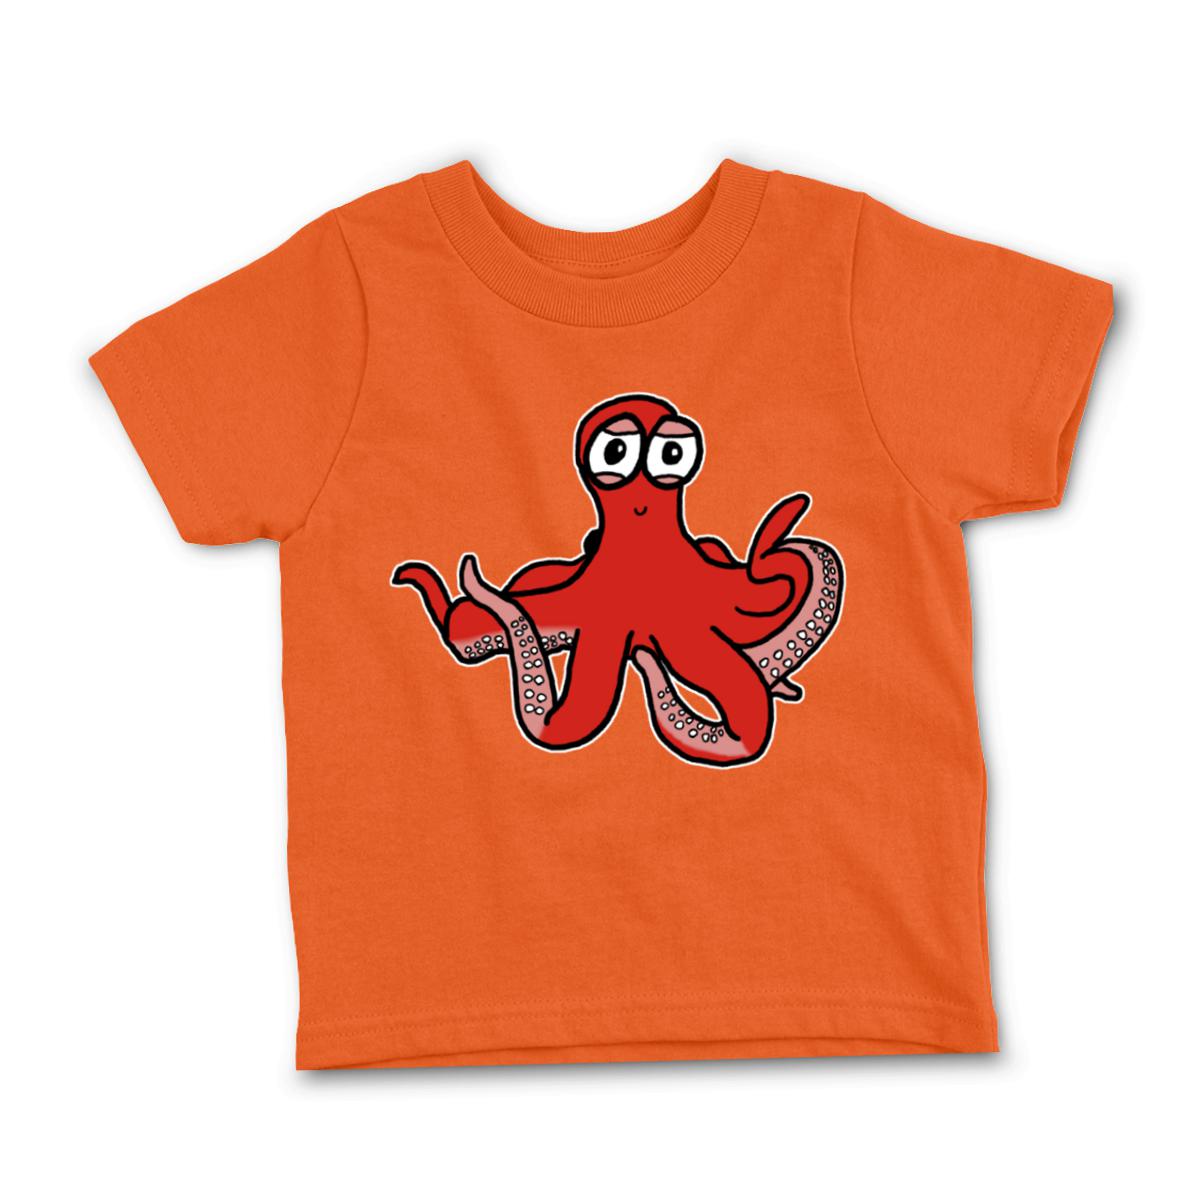 Octopus Toddler Tee 2T orange